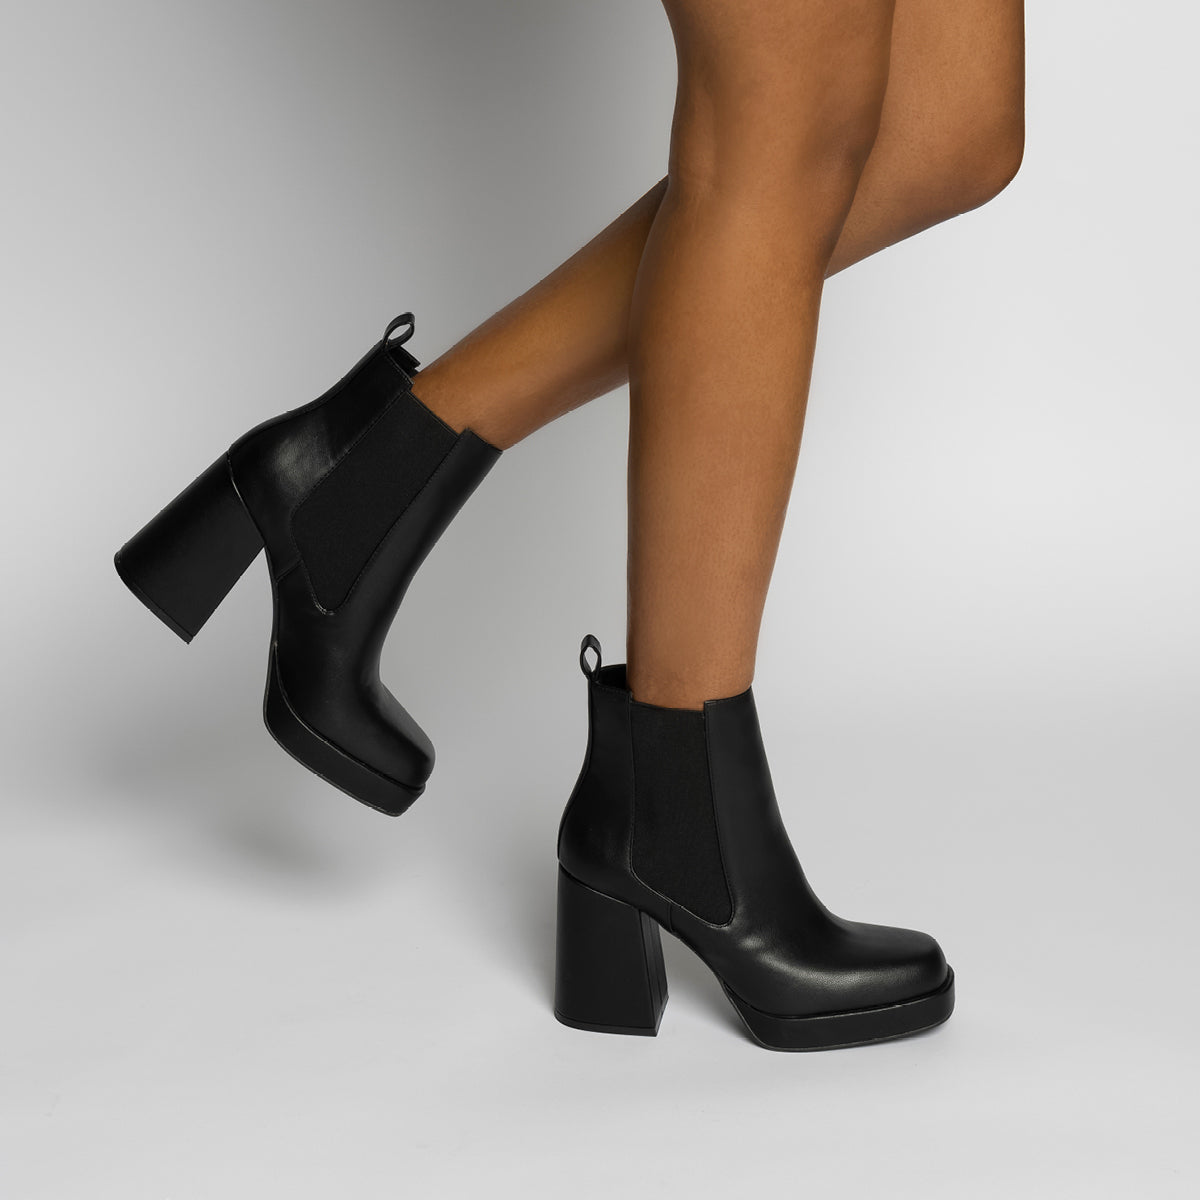 Ava Platform Ankle Boots - Black